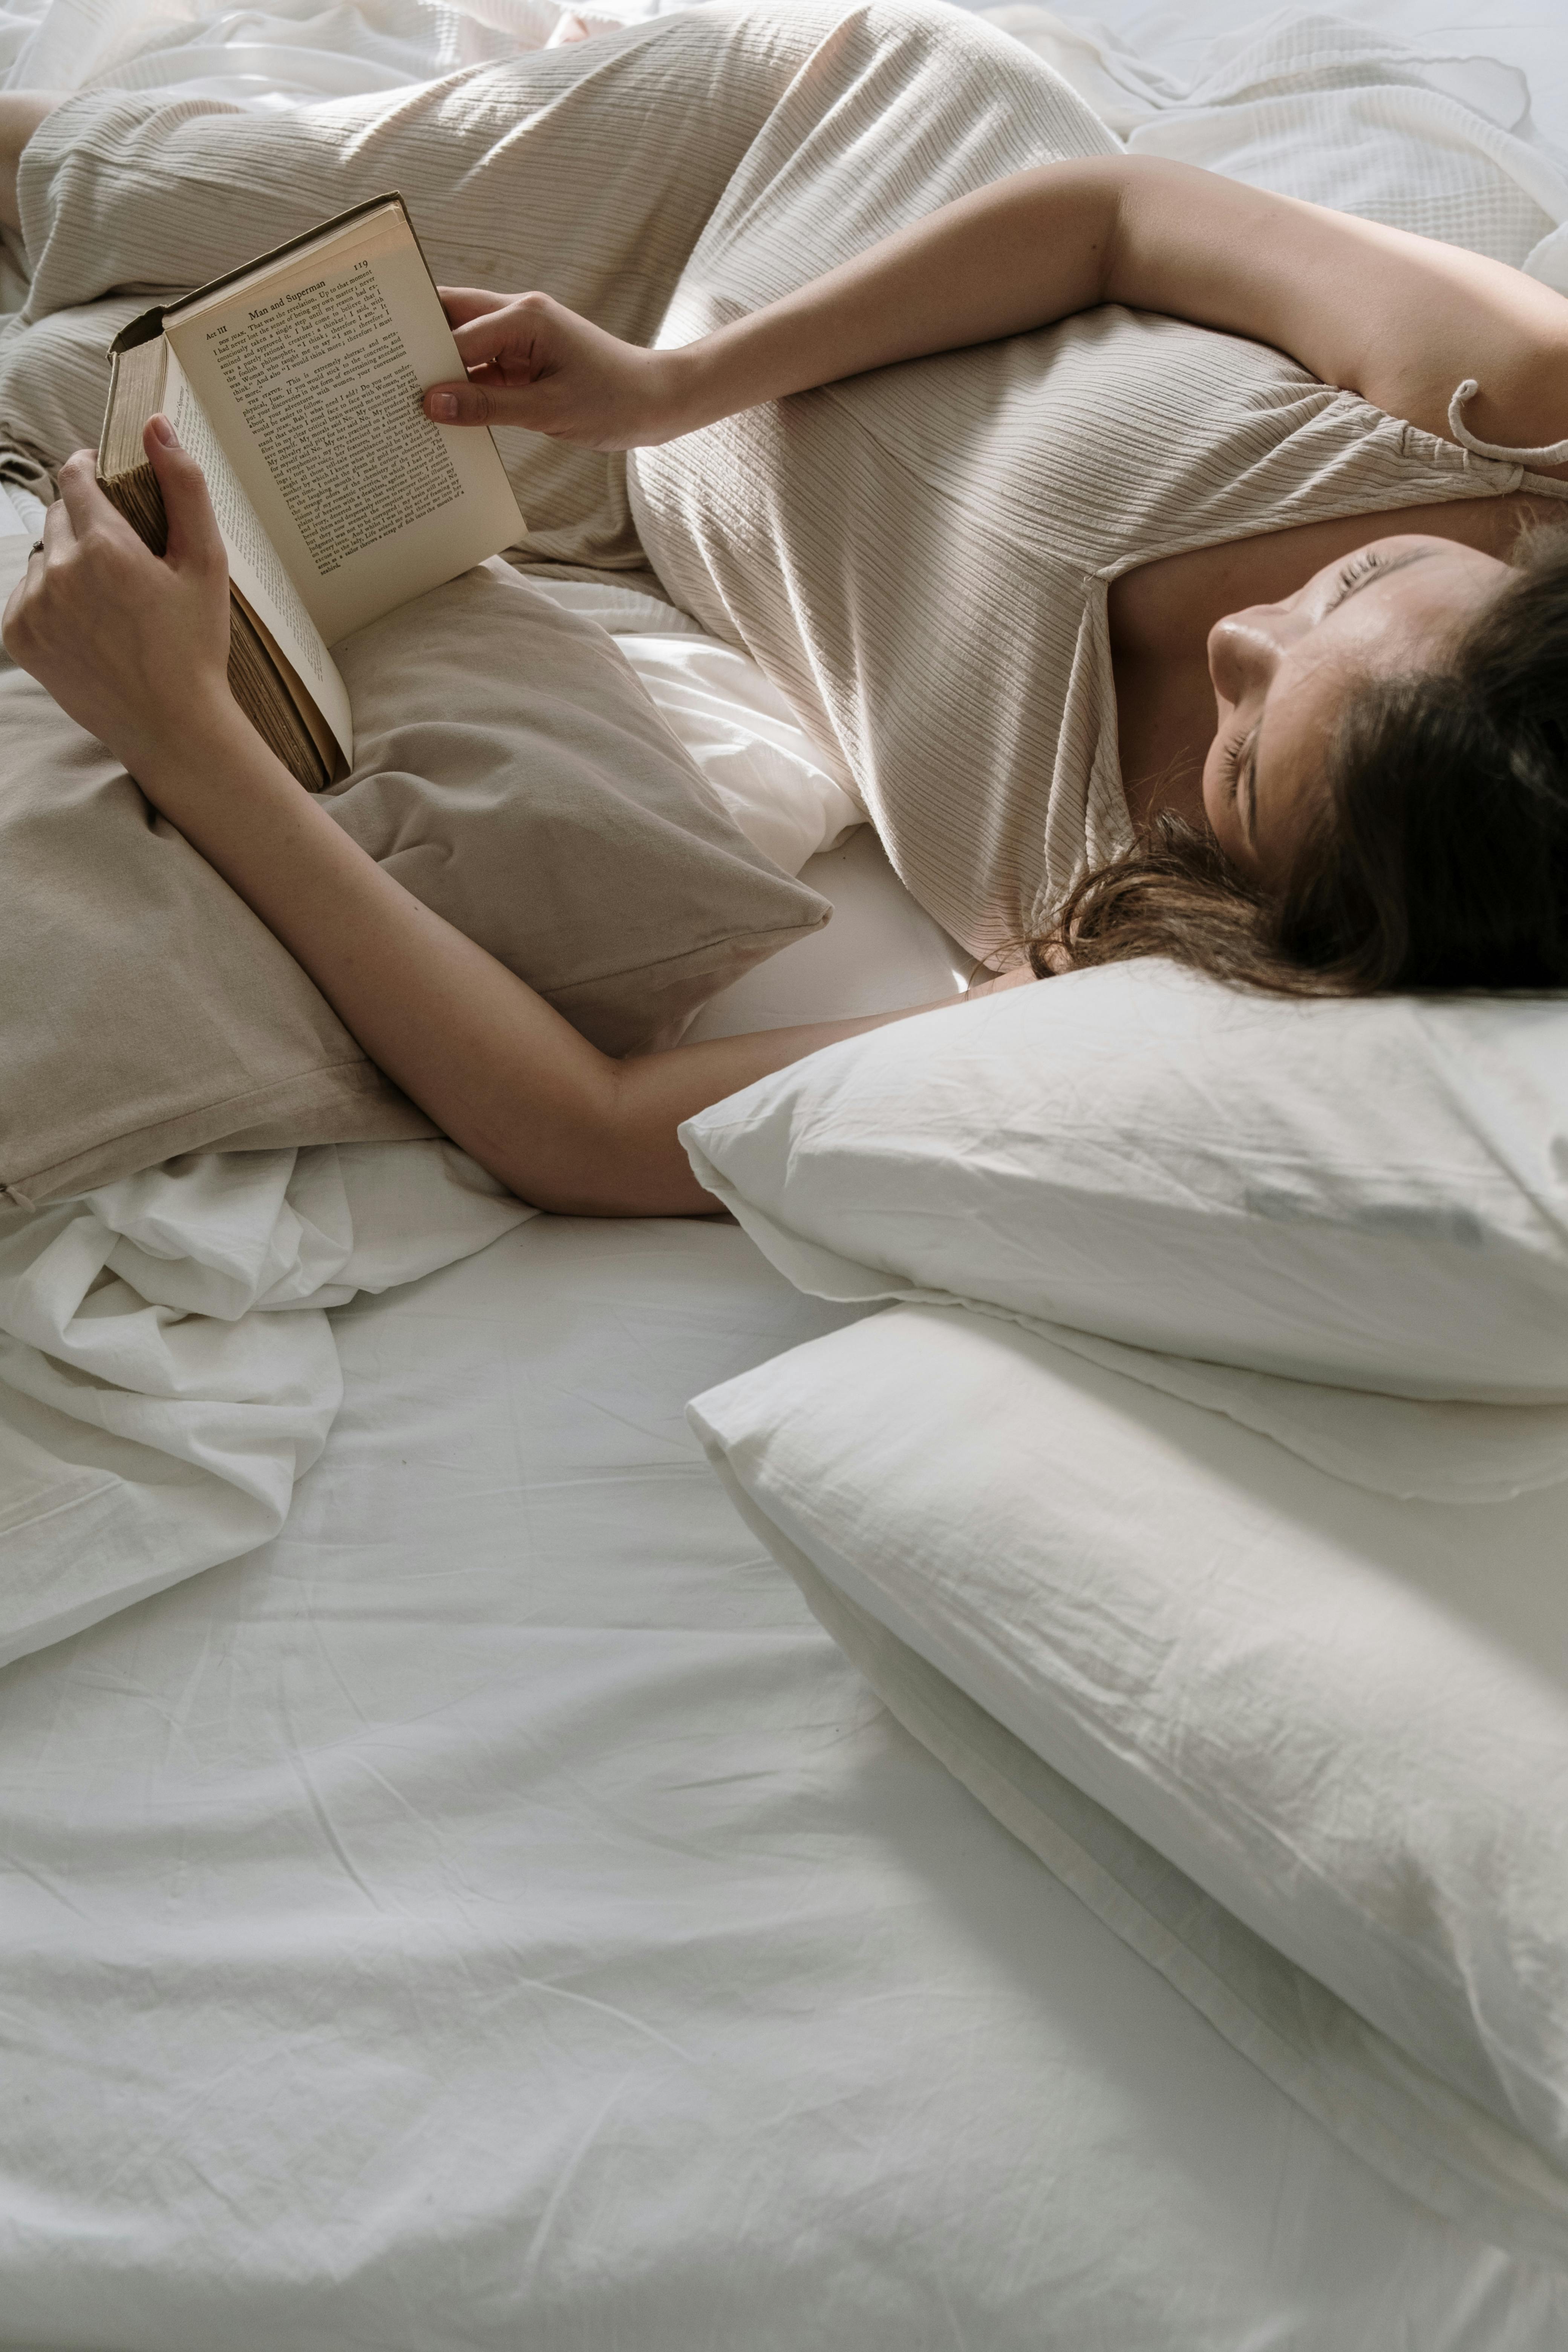 Eine Frau liegt im Bett und liest ein Buch | Quelle: Pexels